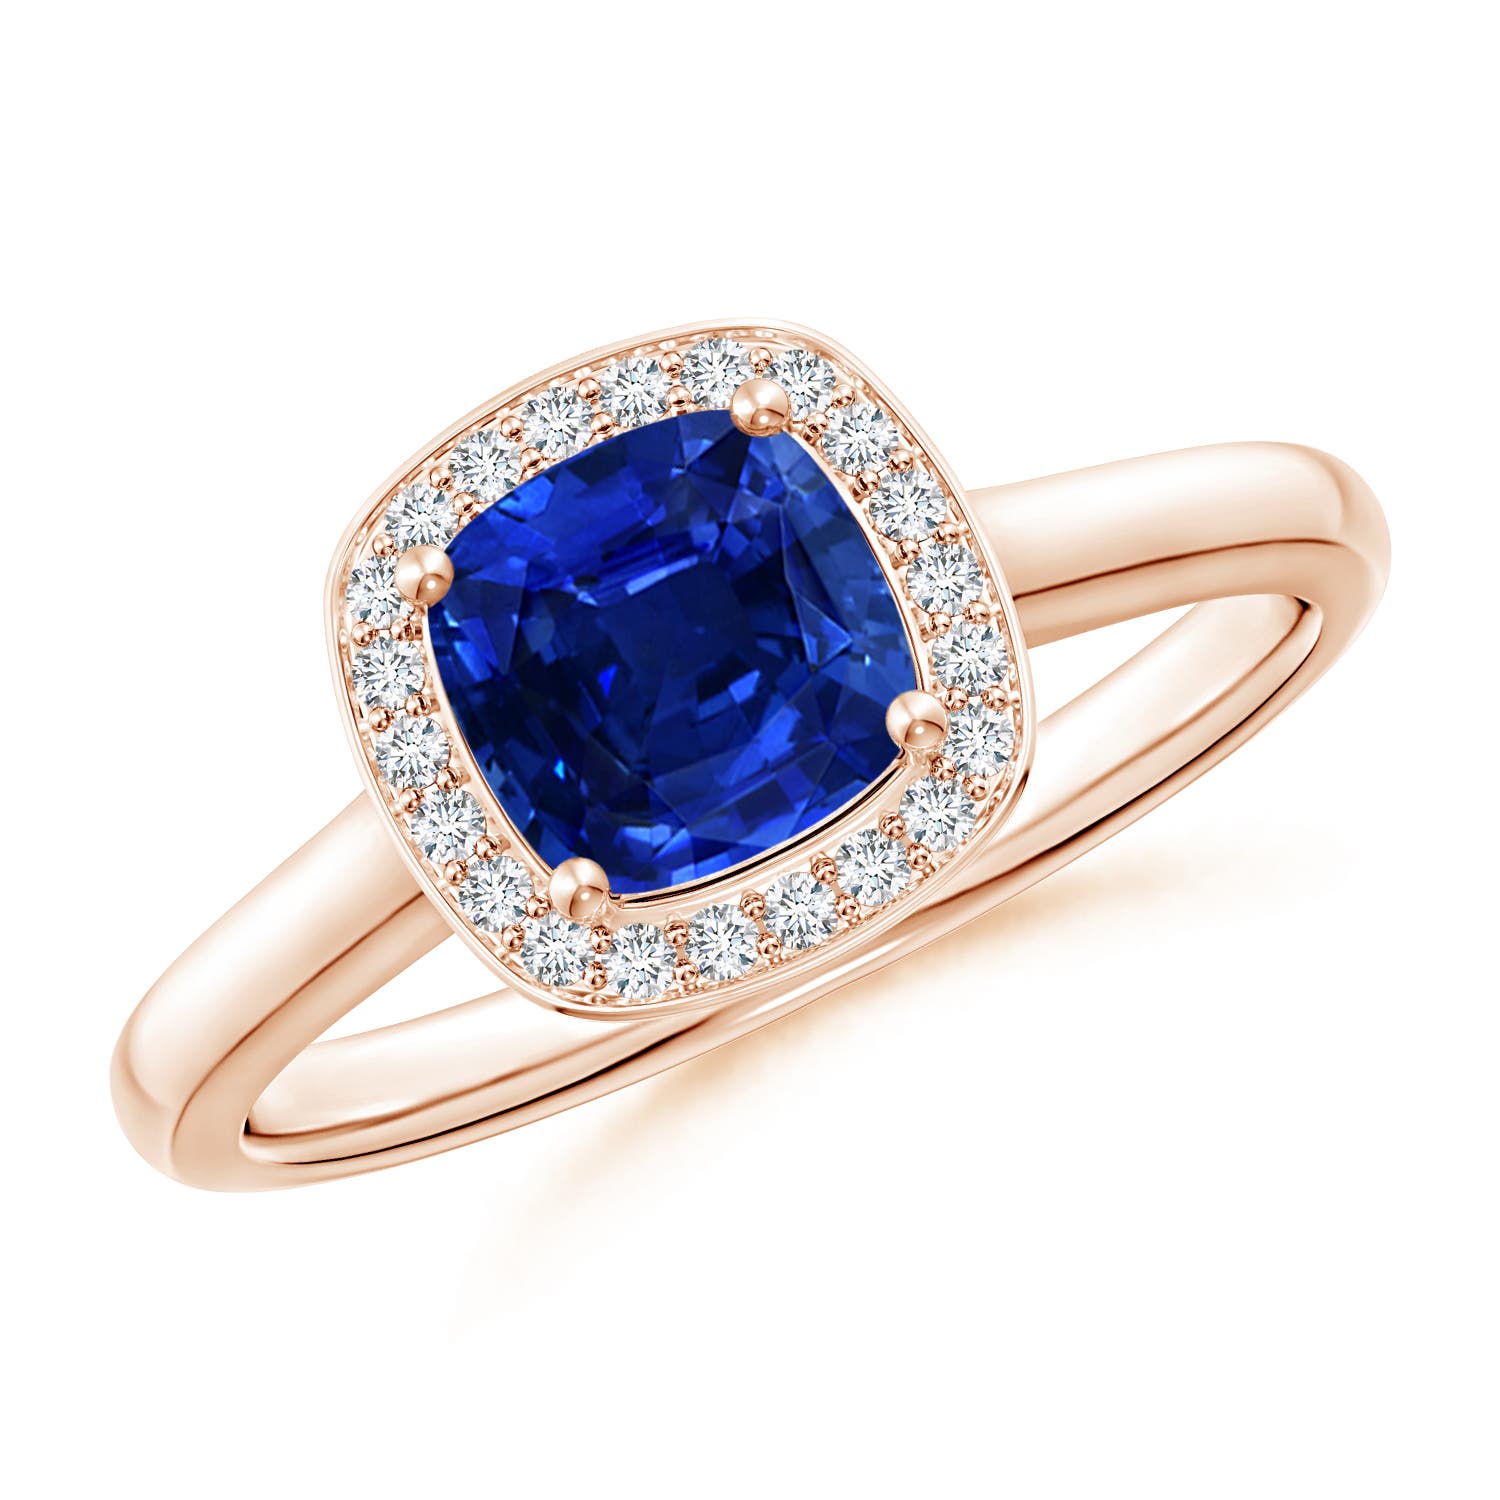 AAAA - Blue Sapphire / 0.68 CT / 14 KT Rose Gold